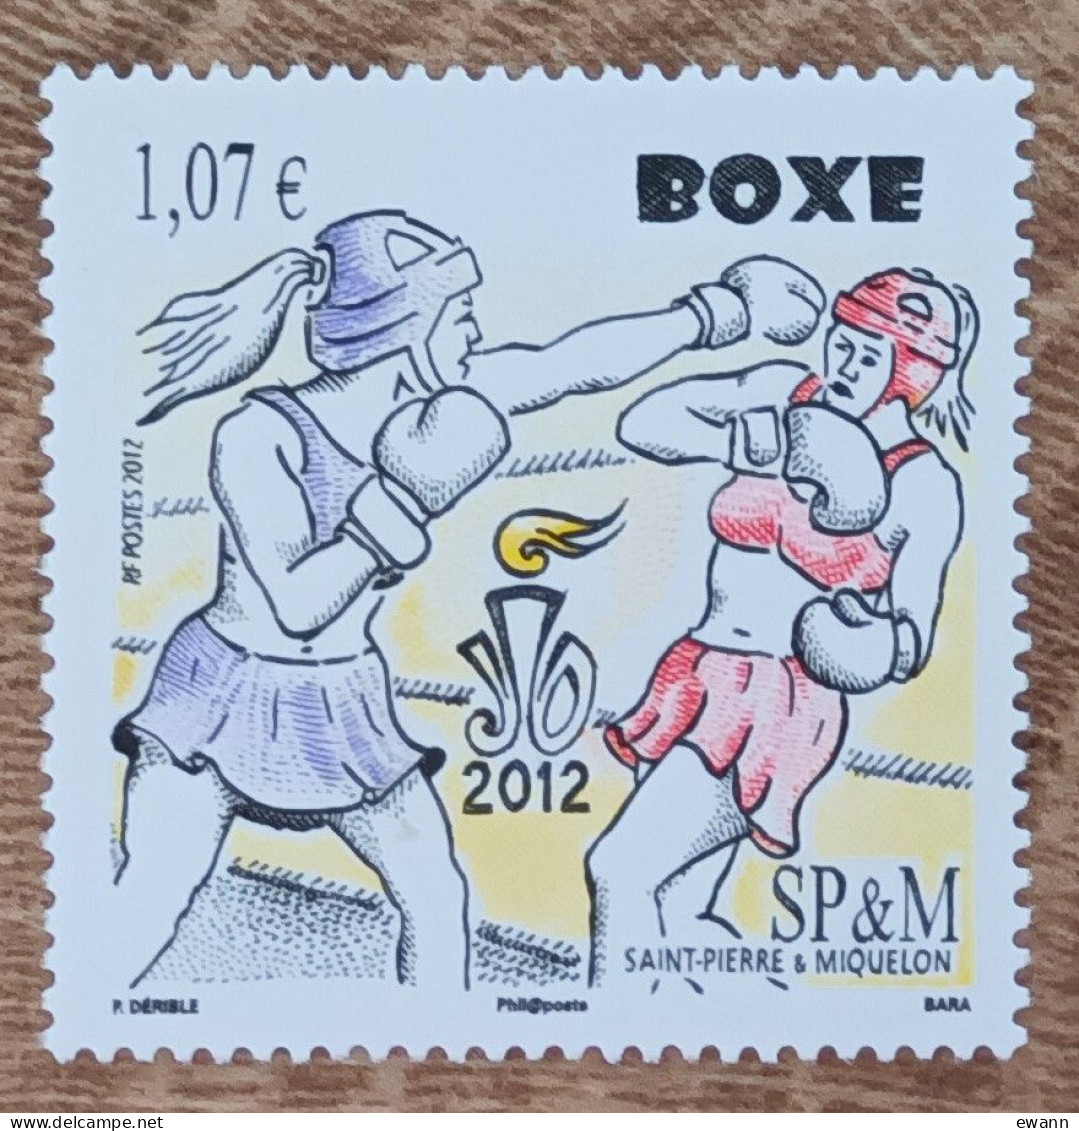 Saint Pierre Et Miquelon - YT N°1050 - Sport / Boxe - 2012 - Neuf - Neufs